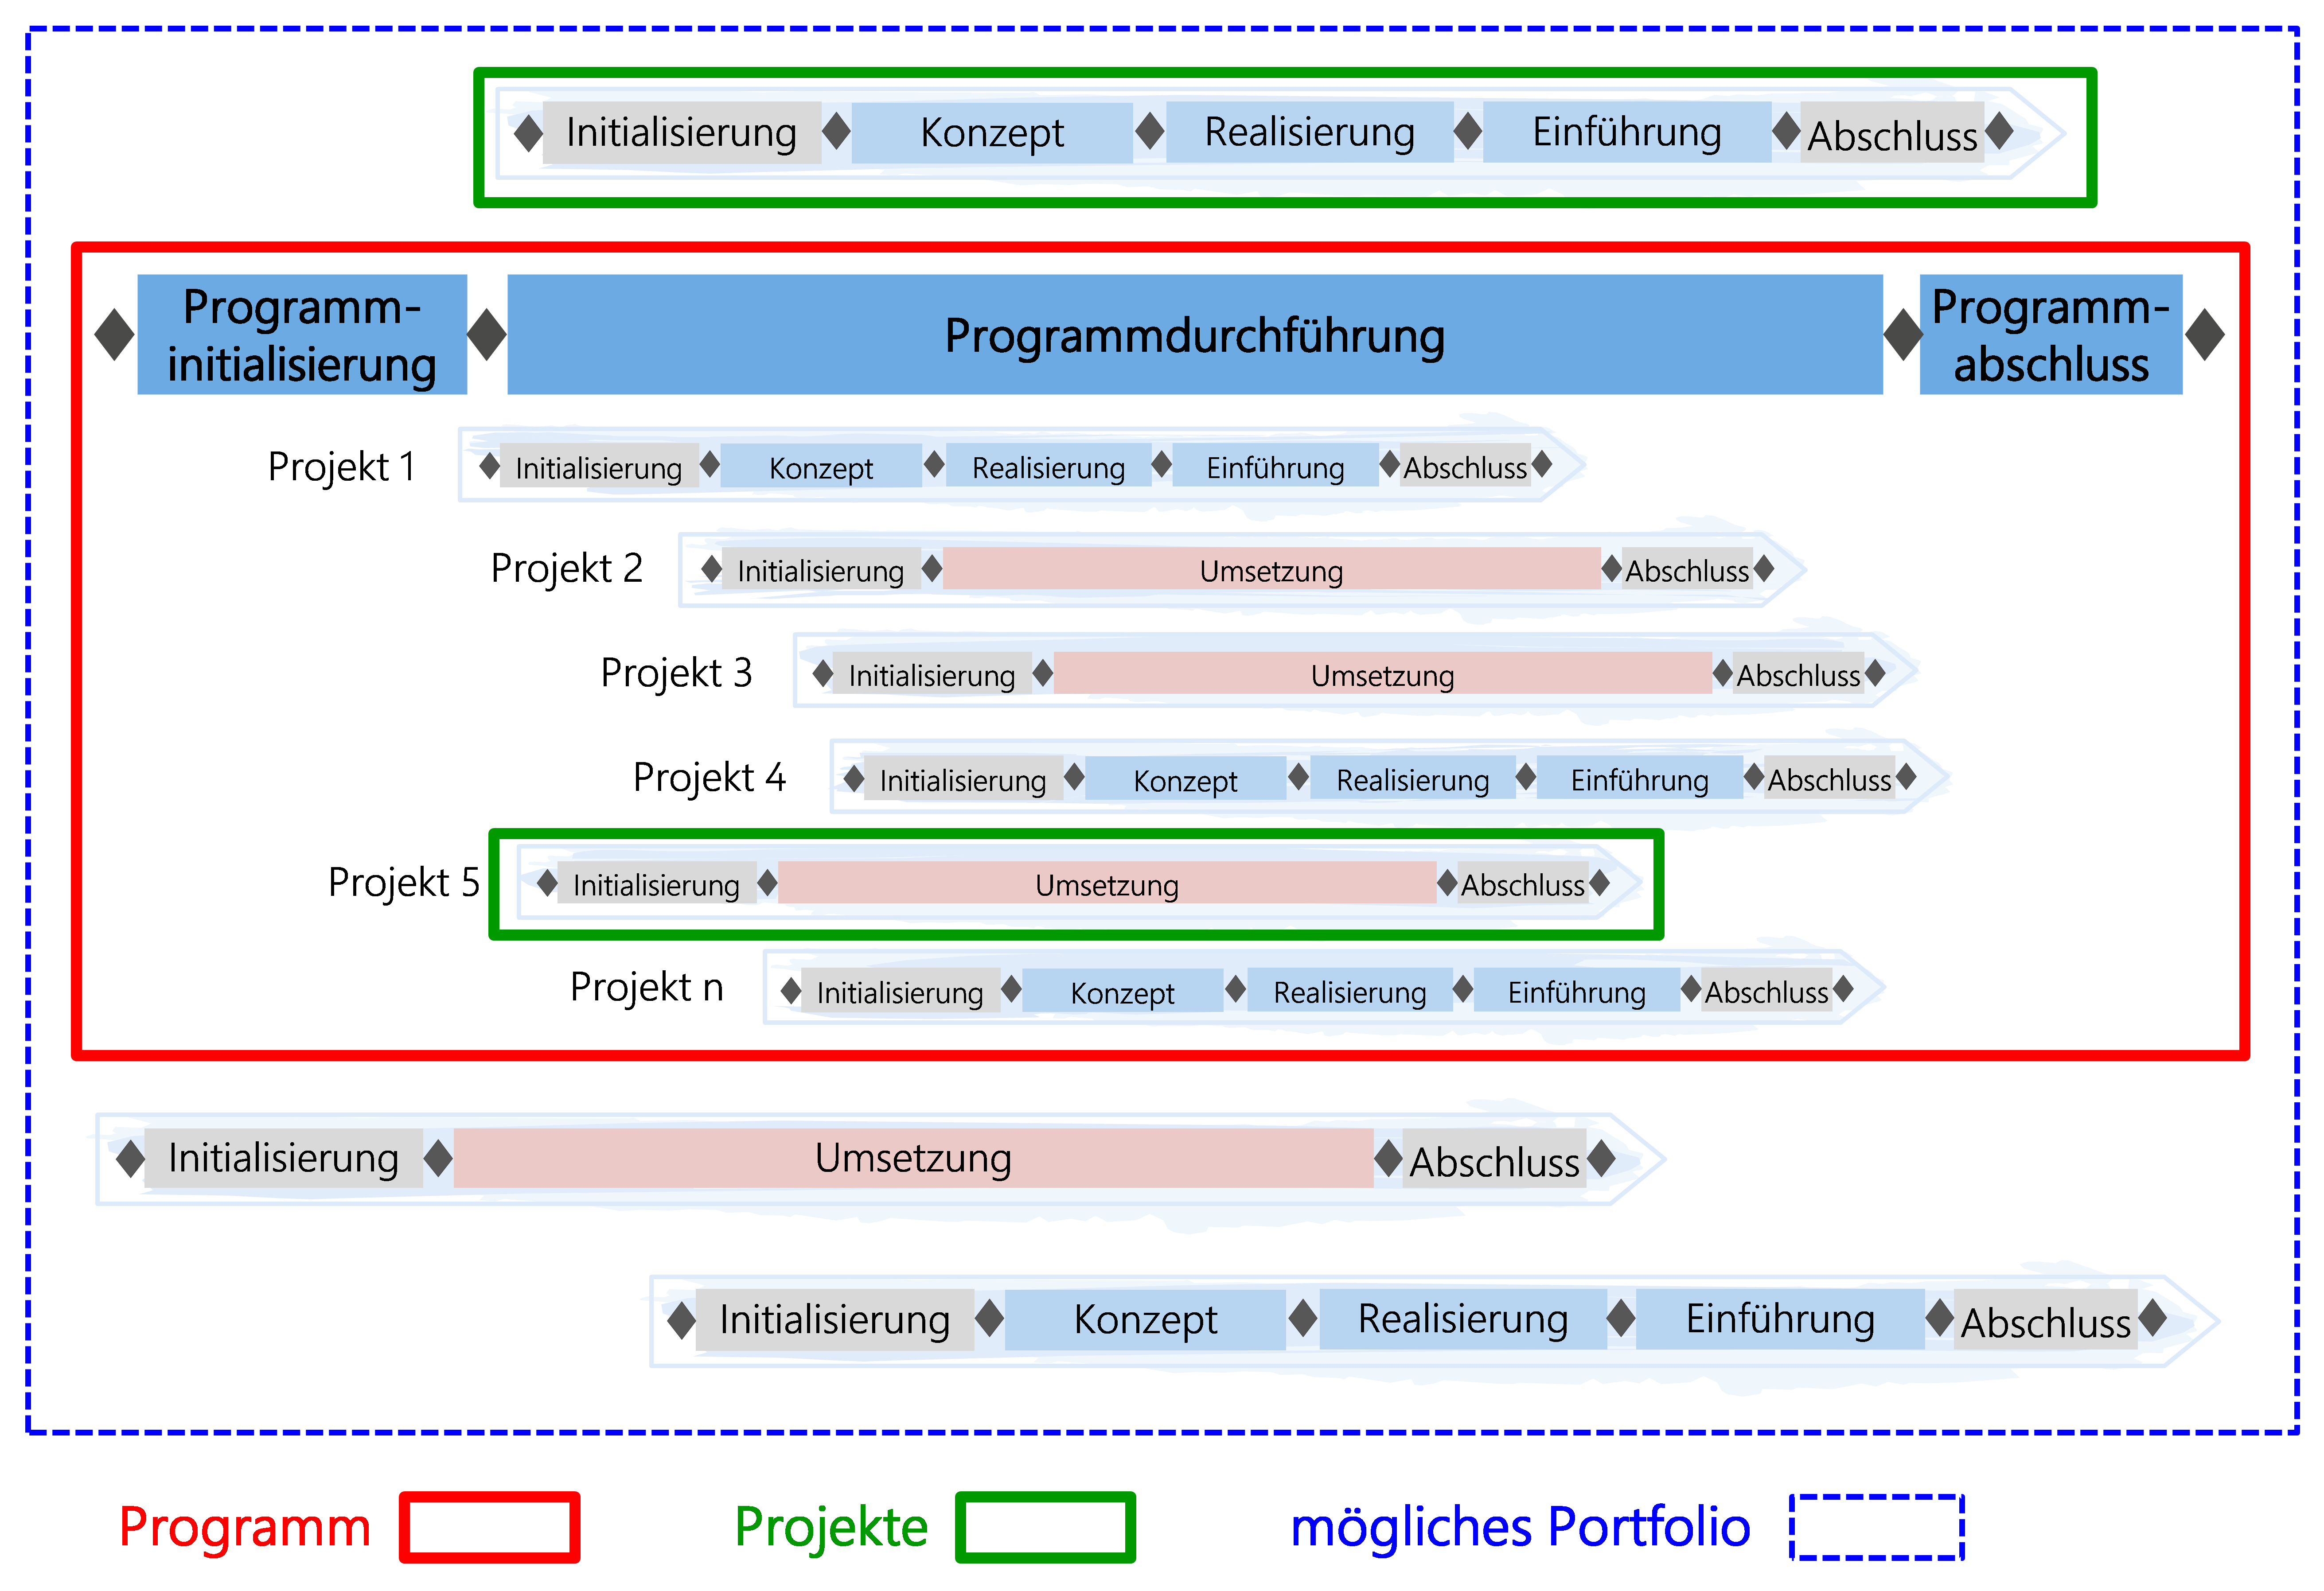 Abbildung: Gleichzeitiges Führen von Projekten und Programmen in einer Stammorganisation